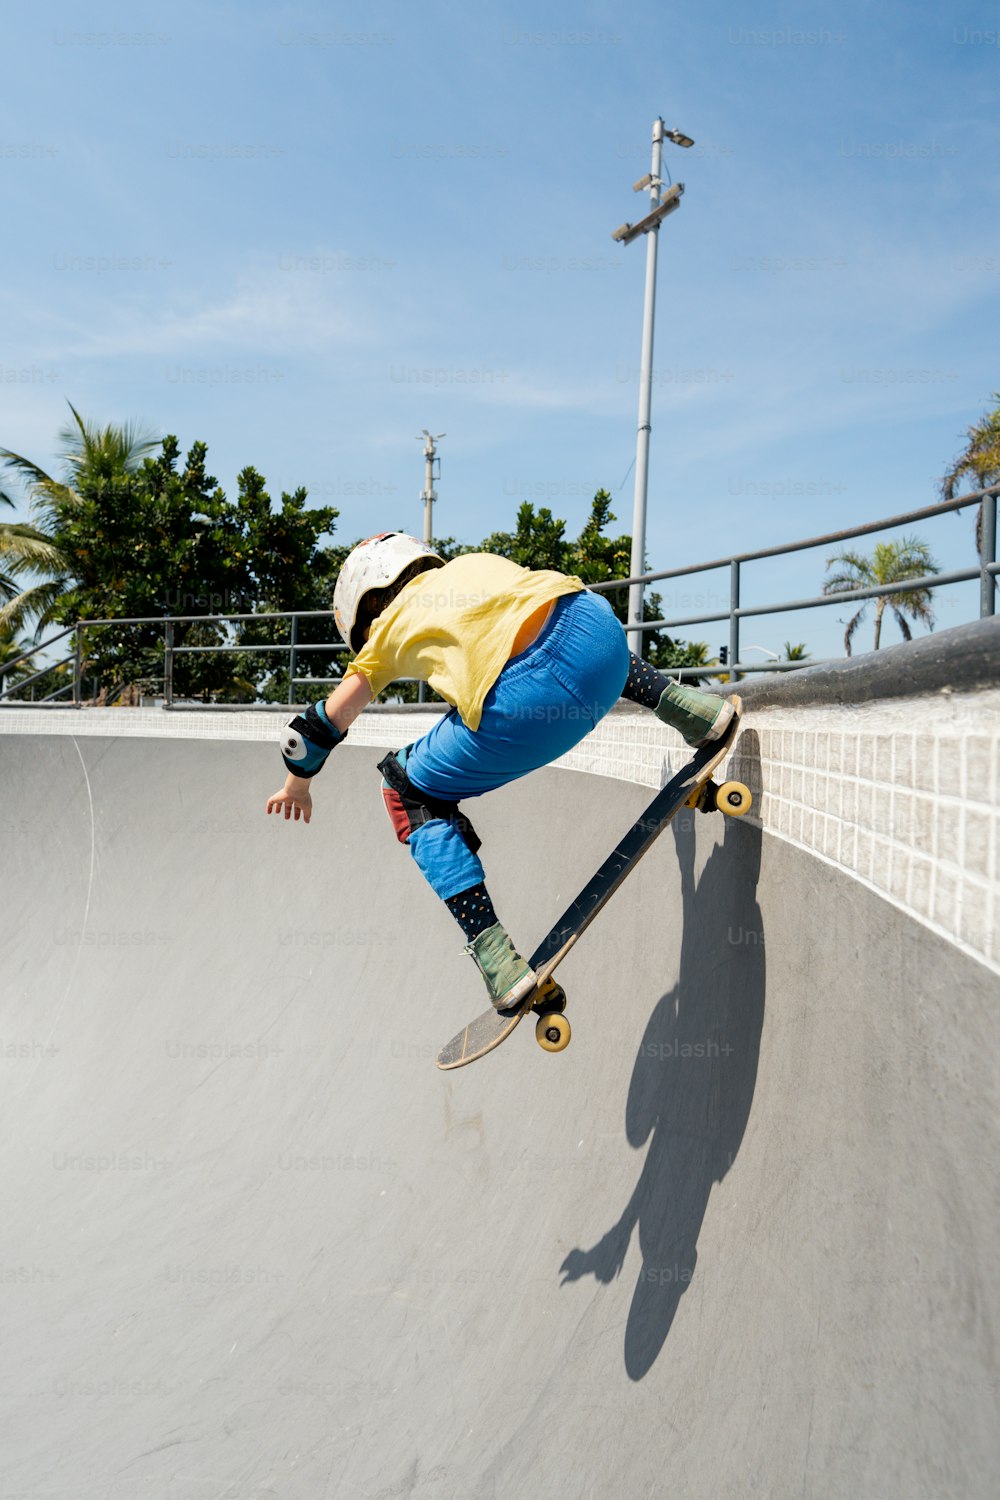 スロープの脇をスケートボードで登る男性